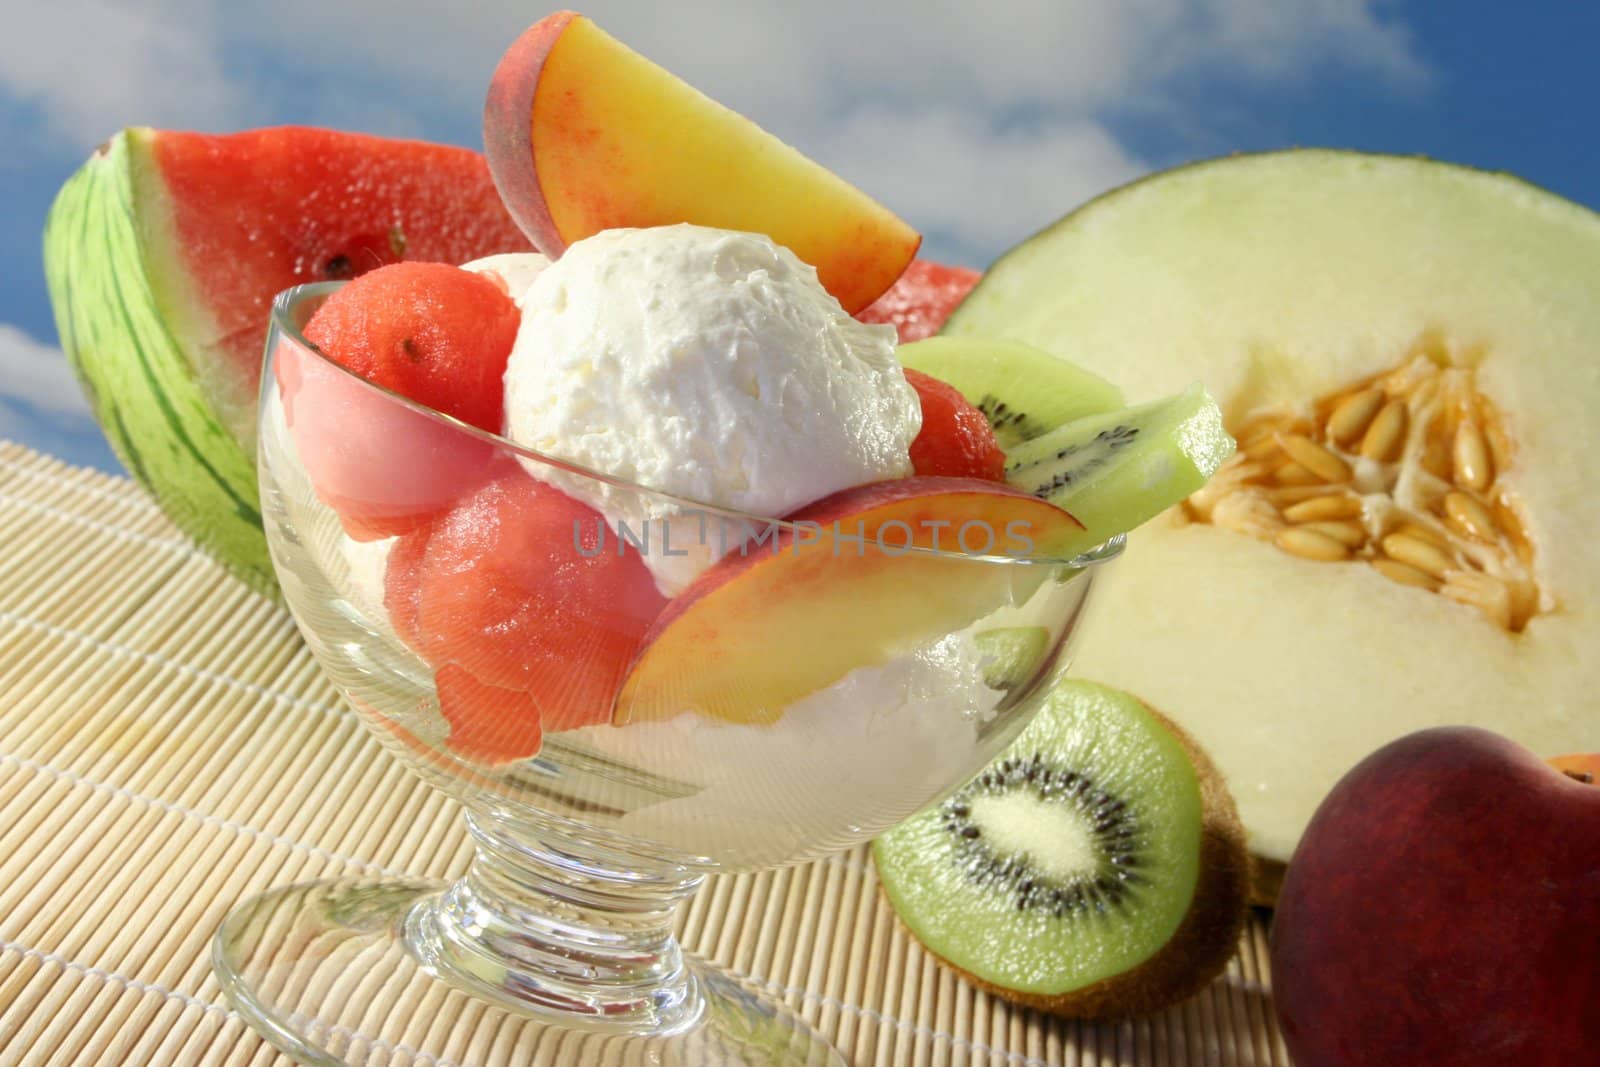 Fruit sundae with fresh melon, kiwi and peach